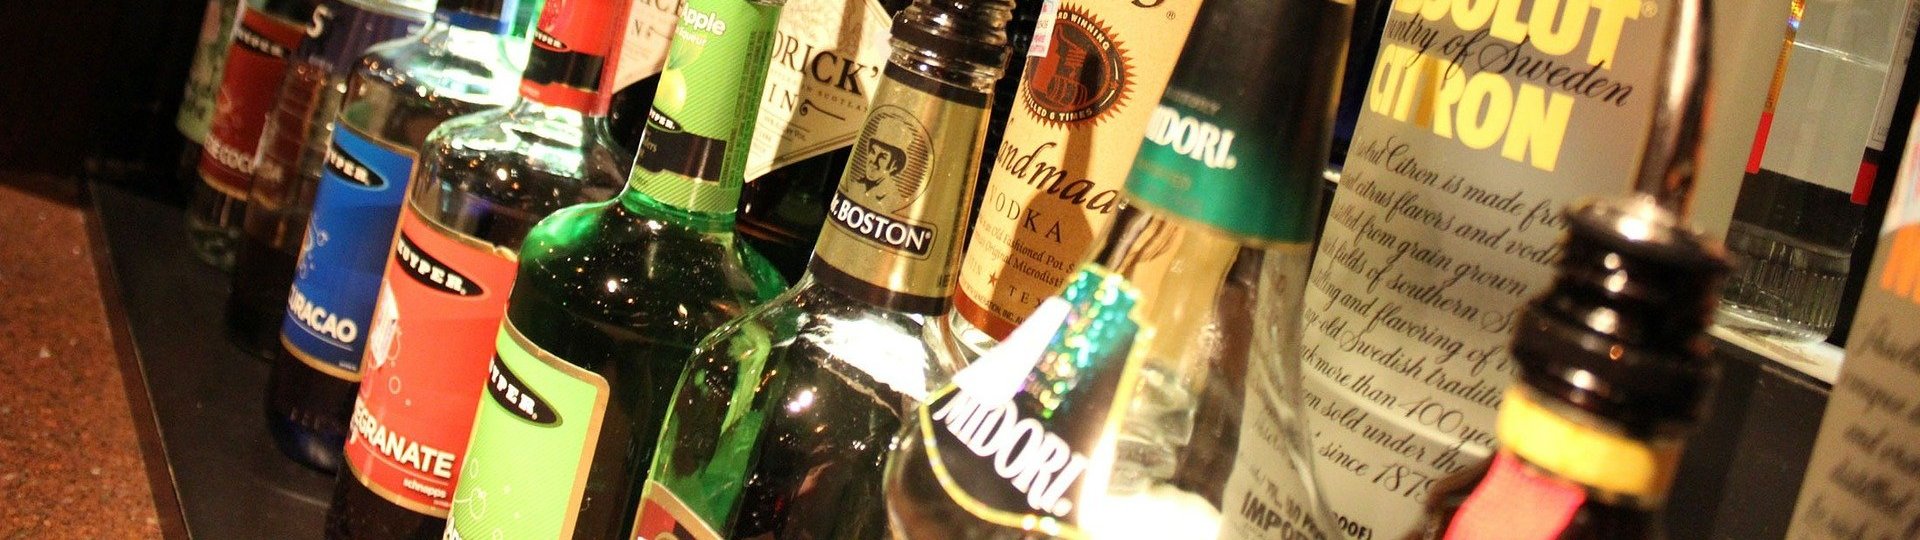 Alkohol & seine Wirkung im Organismus - Landratsamt Altenburger Land